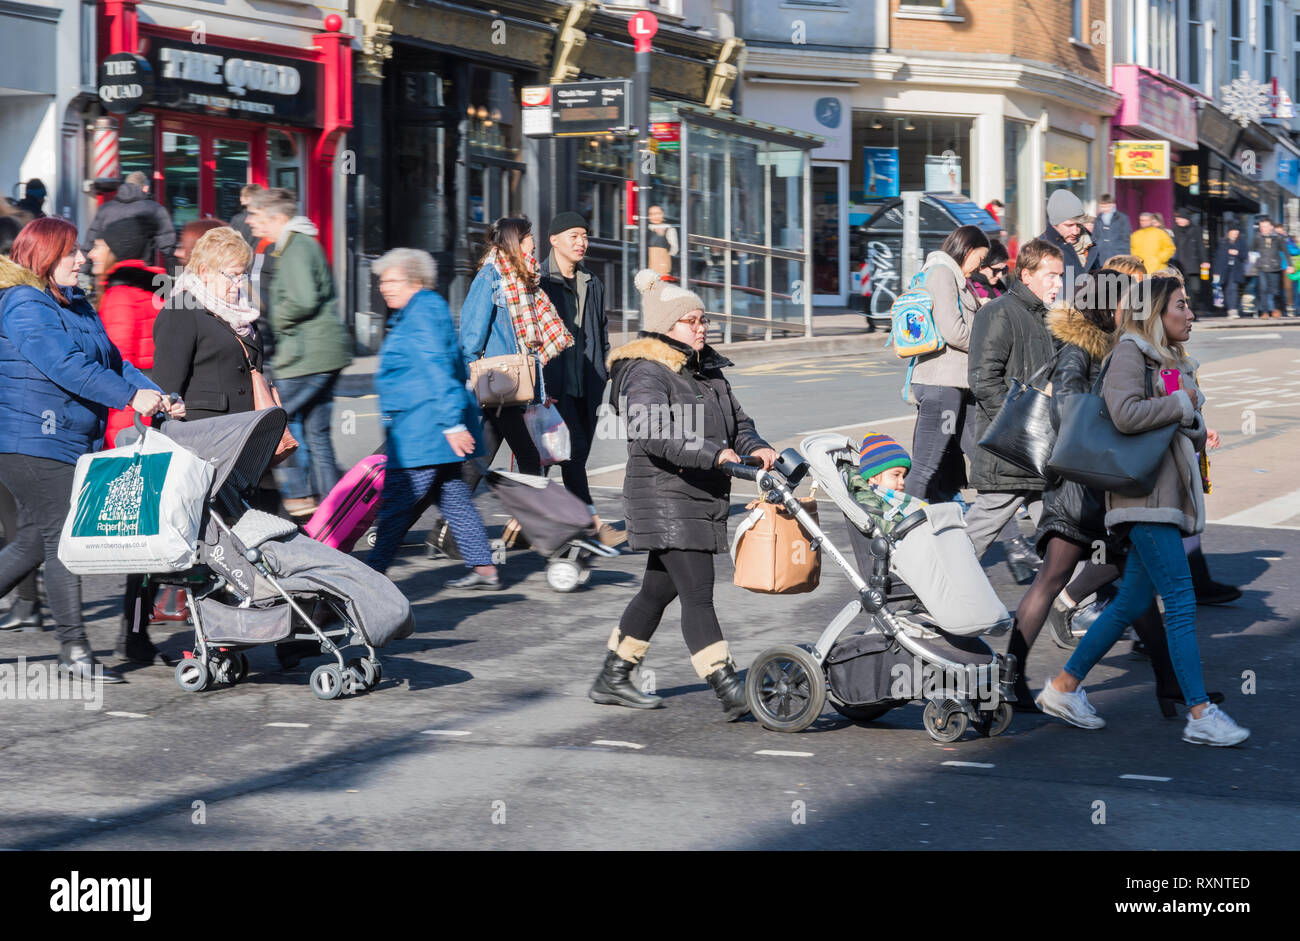 Des gens qui poussent des poussettes avec des enfants sur une route très fréquentée à Brighton, East Sussex, Angleterre, Royaume-Uni. Personnes traversant des routes très fréquentées. Tous les jours. Banque D'Images